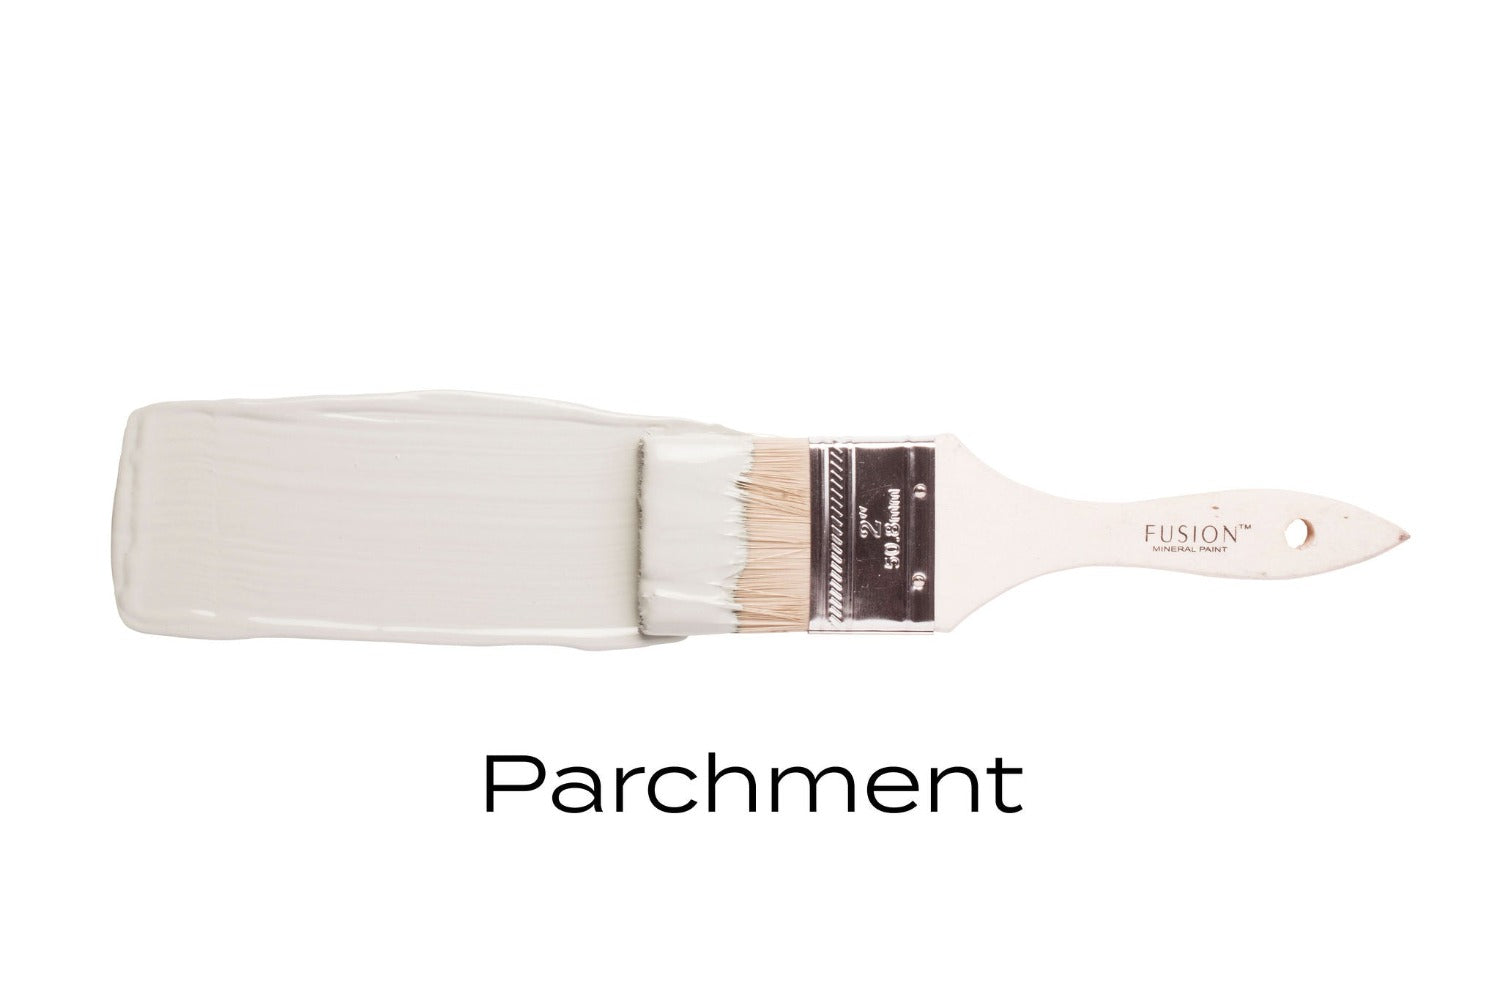 PARCHMENT - Fusion Mineral Paint - 37ml, 500ml